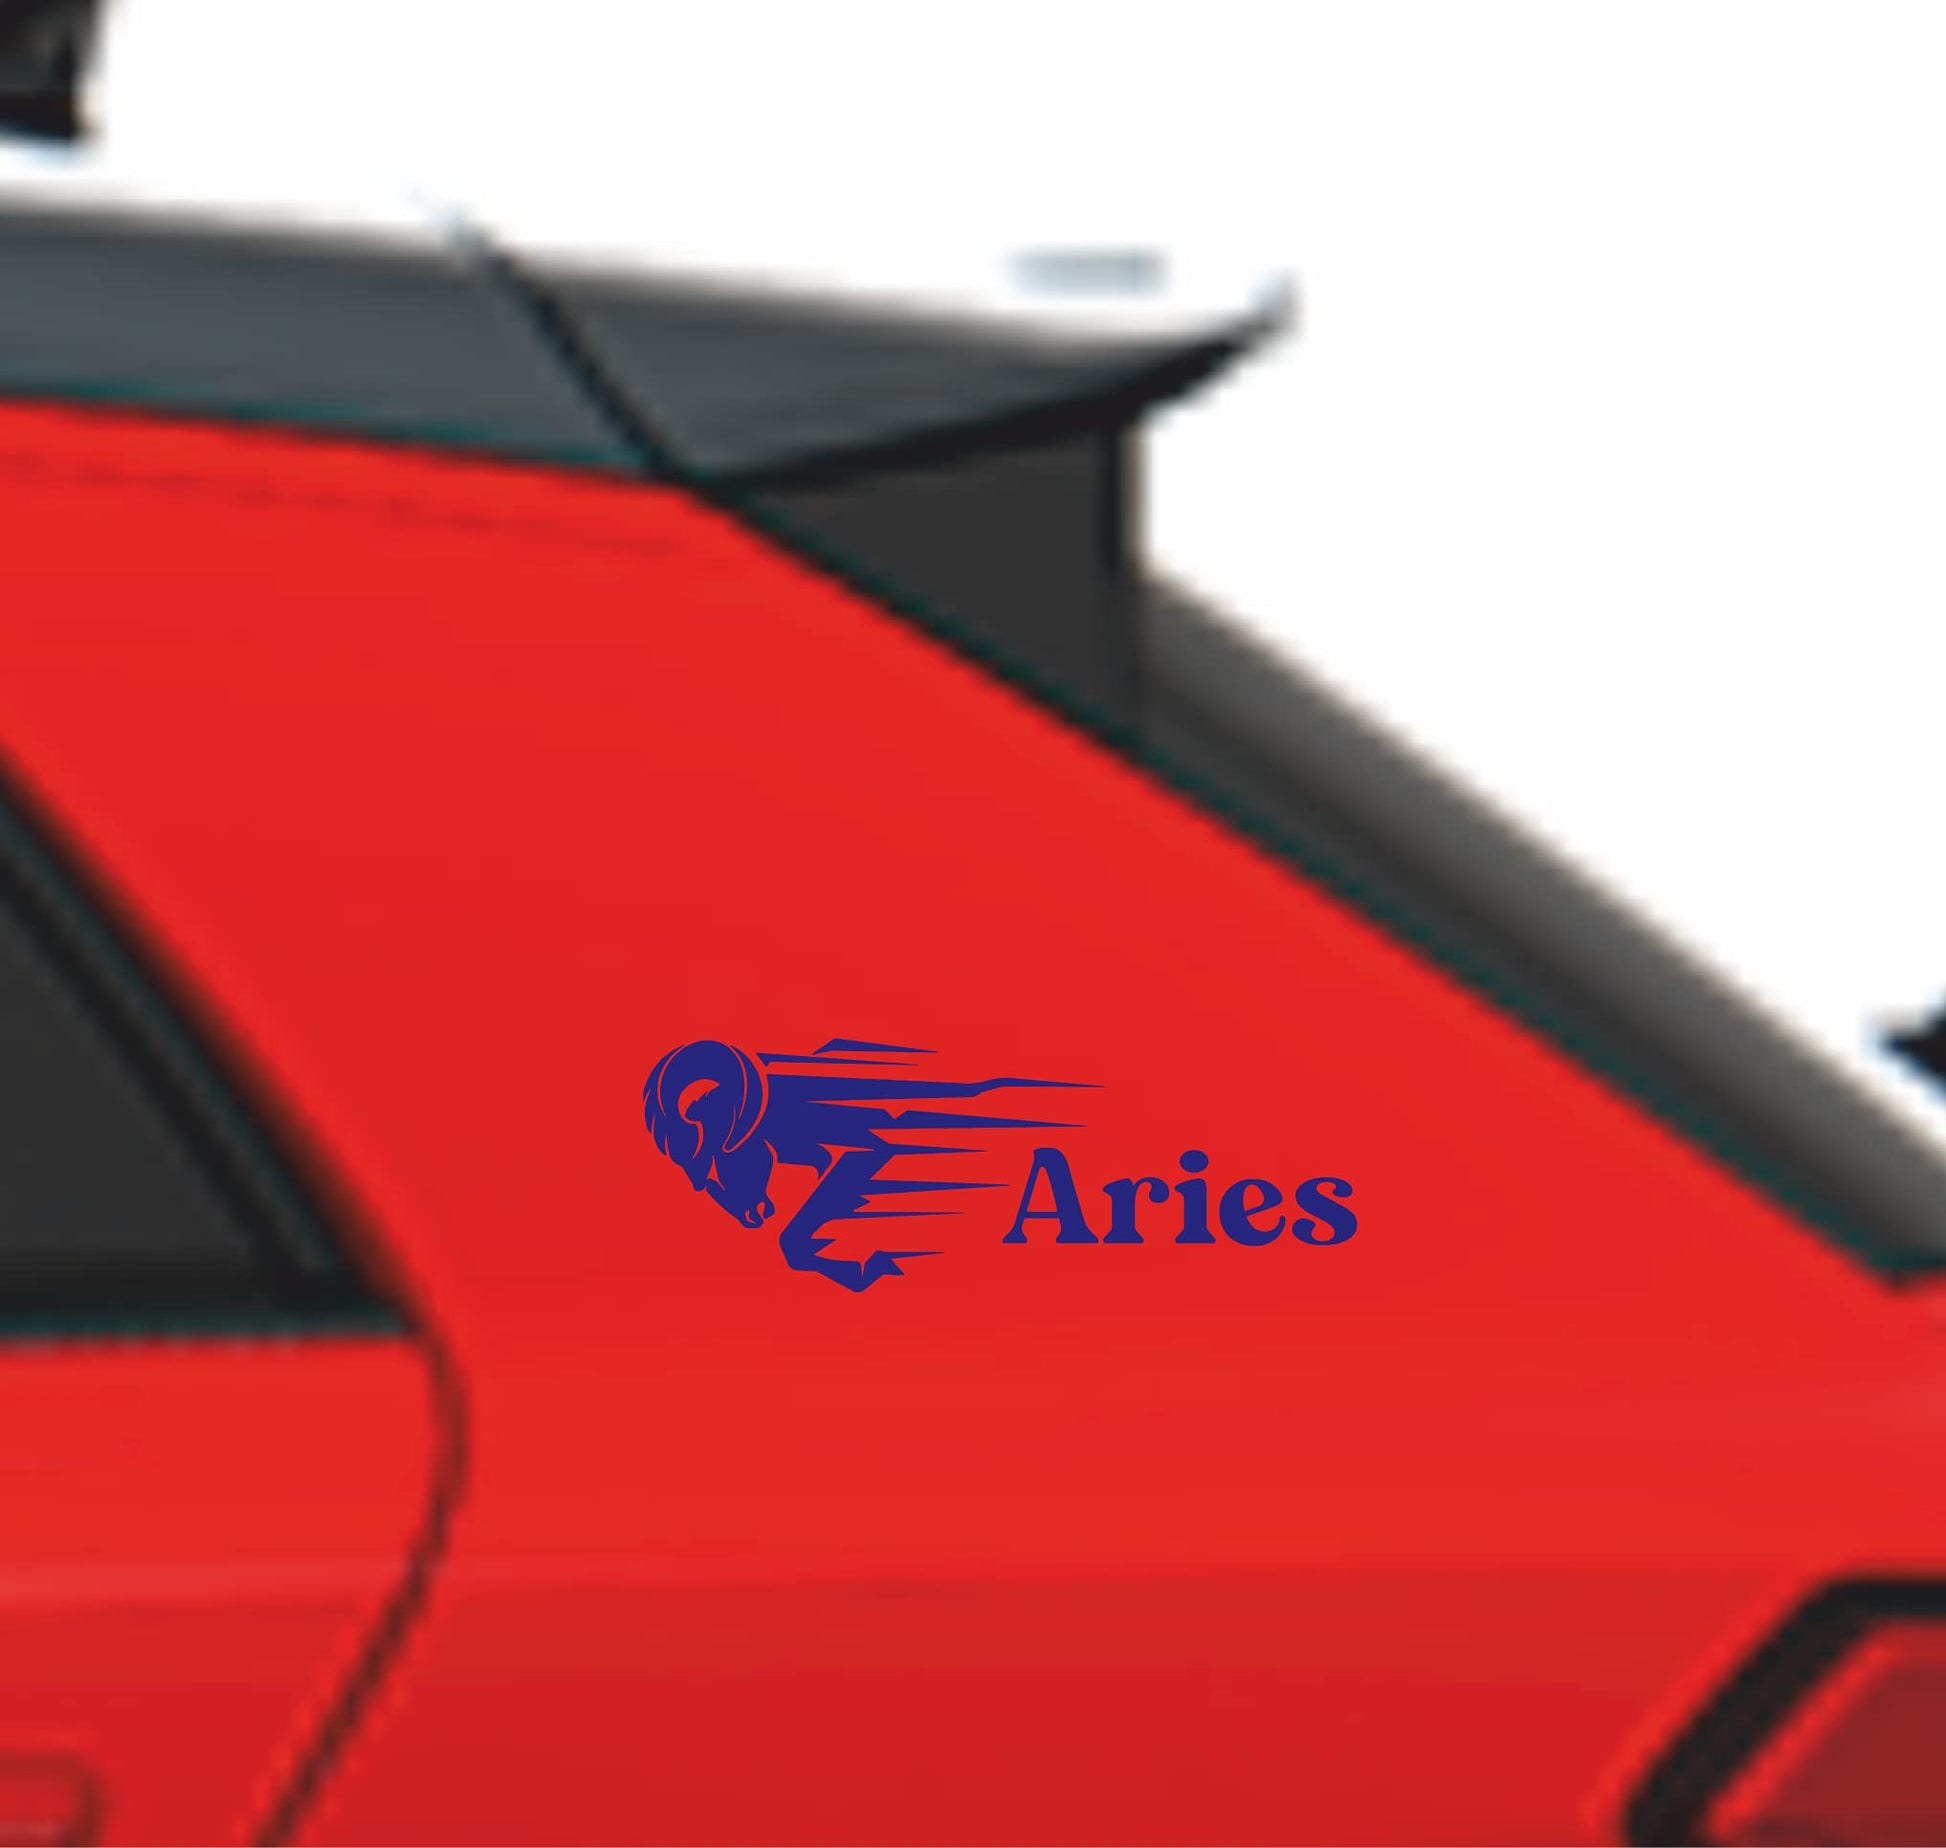 Adesivo Segno Zodiacale ARIETE- Adesive da Auto moto casco casa home camera - vinile colore a scelta COD.0025 a €12.99 solo da DualColorStampe